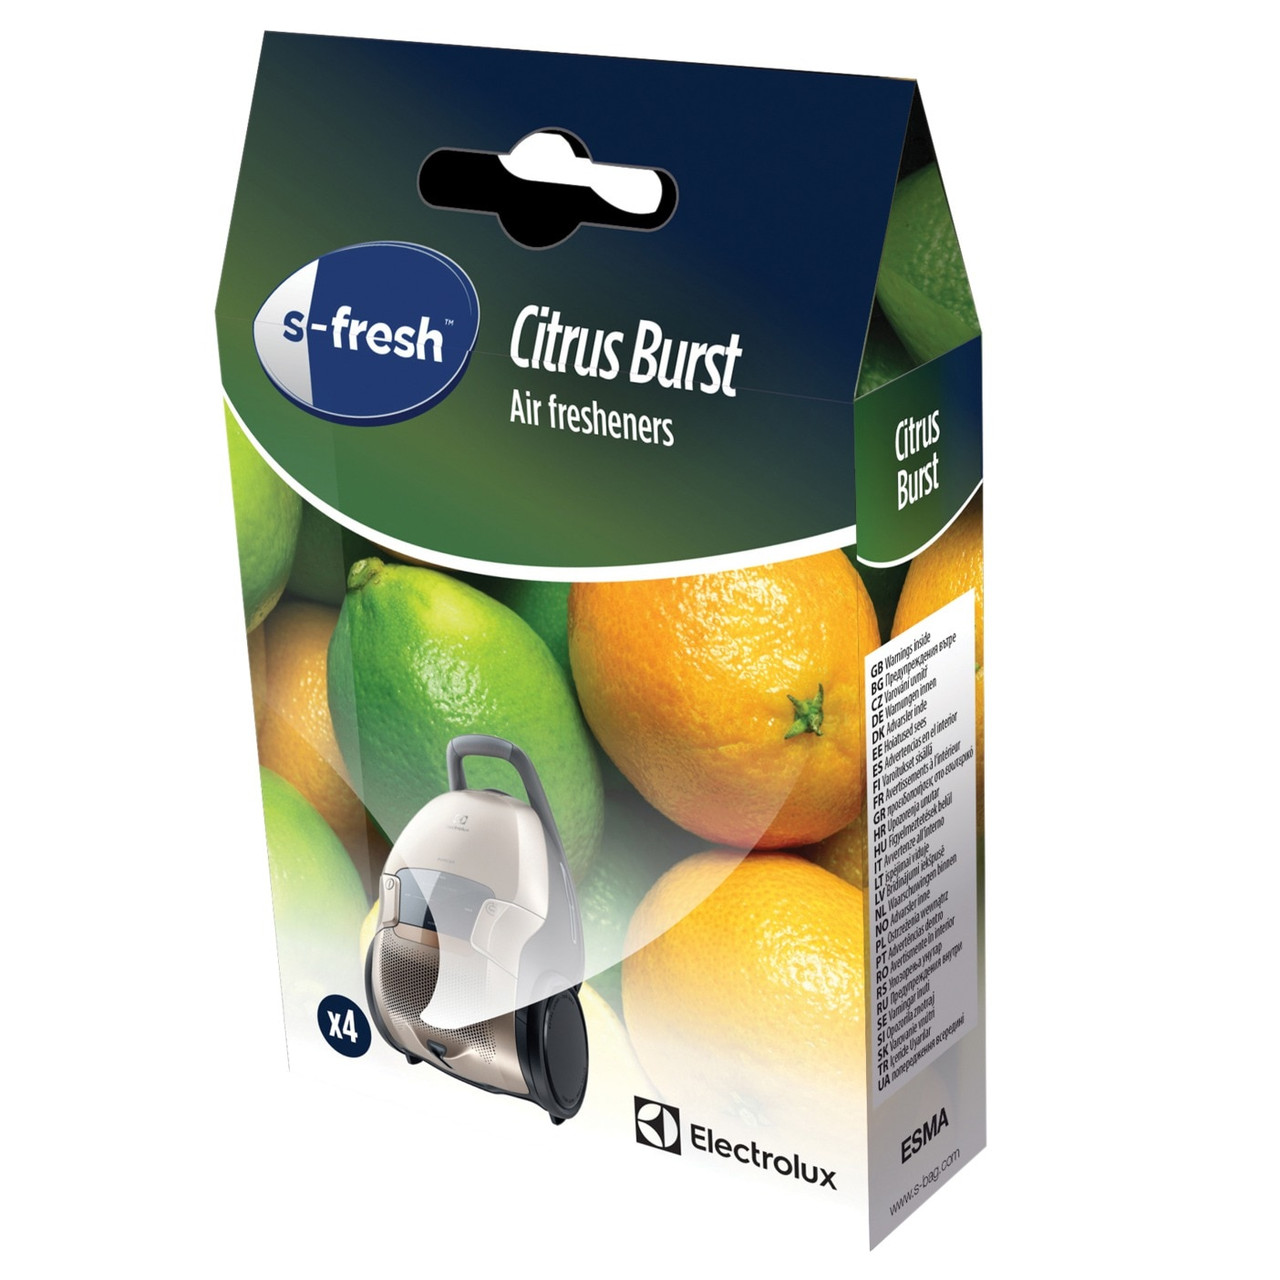 s-fresh Vacuum Cleaner Air Freshener Citrus Burst